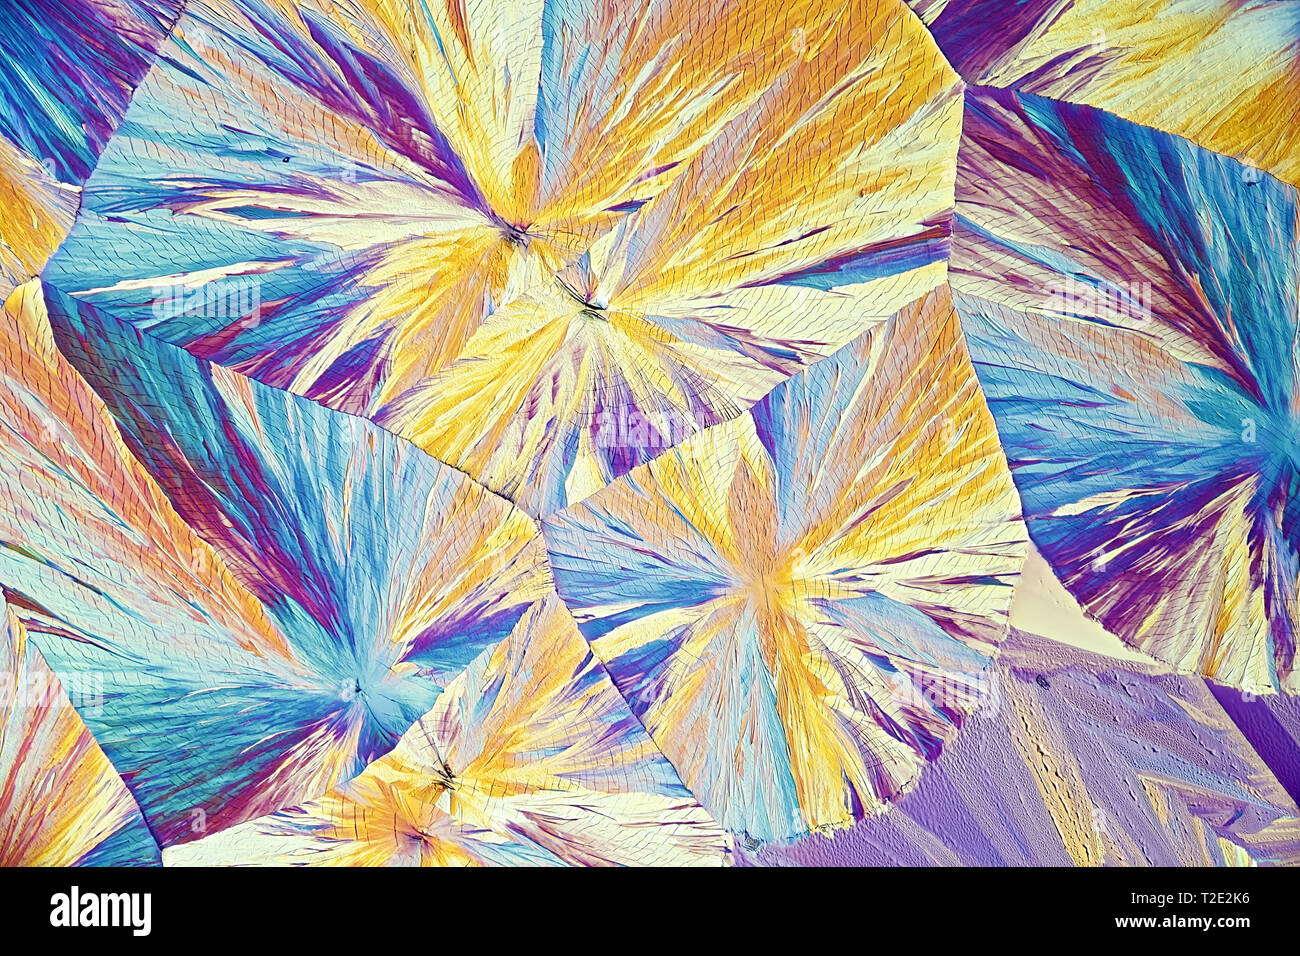 Dies ist Zitronensäure, eine gemeinsame Lebensmittelzusatzstoff, in kristallisierter Form fotografiert. Stockfoto